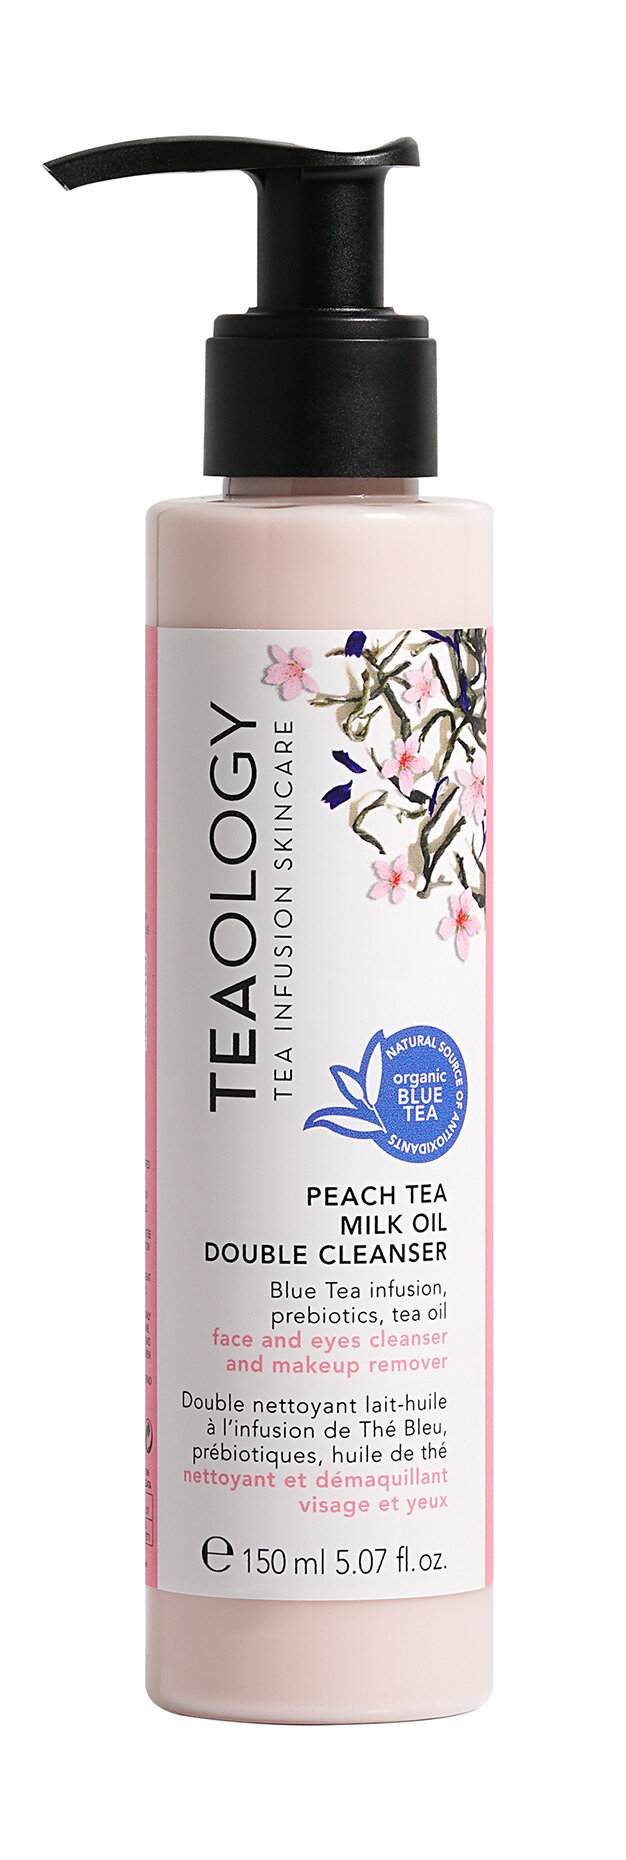 TEAOLOGY Peach Tea Молочко-масло для лица и глаз очищающее, 150 мл